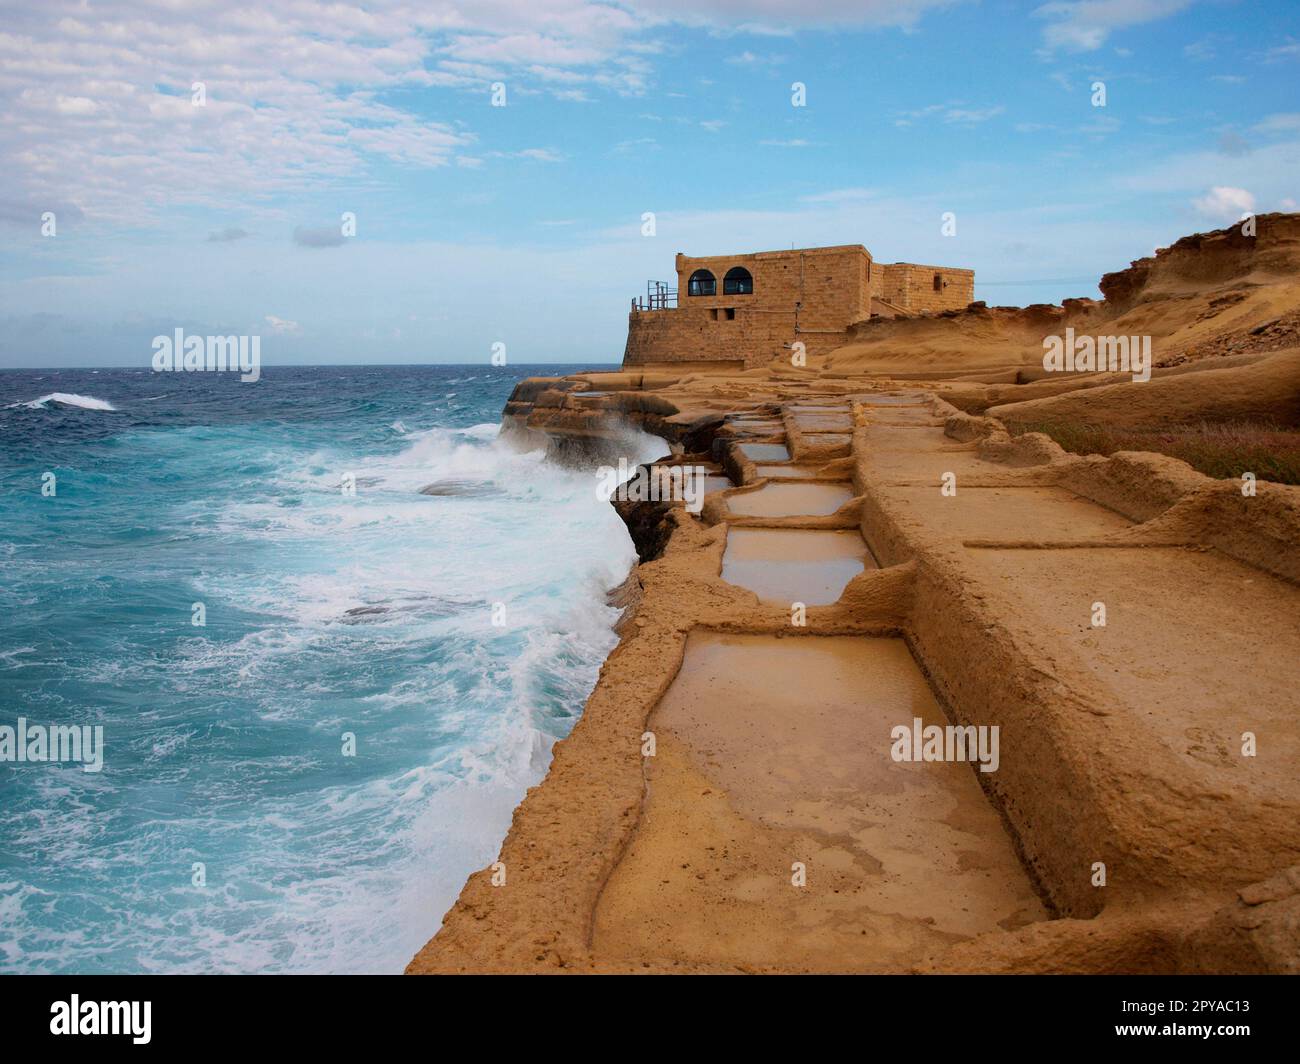 Salines historiques, baie de Xwejni, Gozo, Malte Banque D'Images